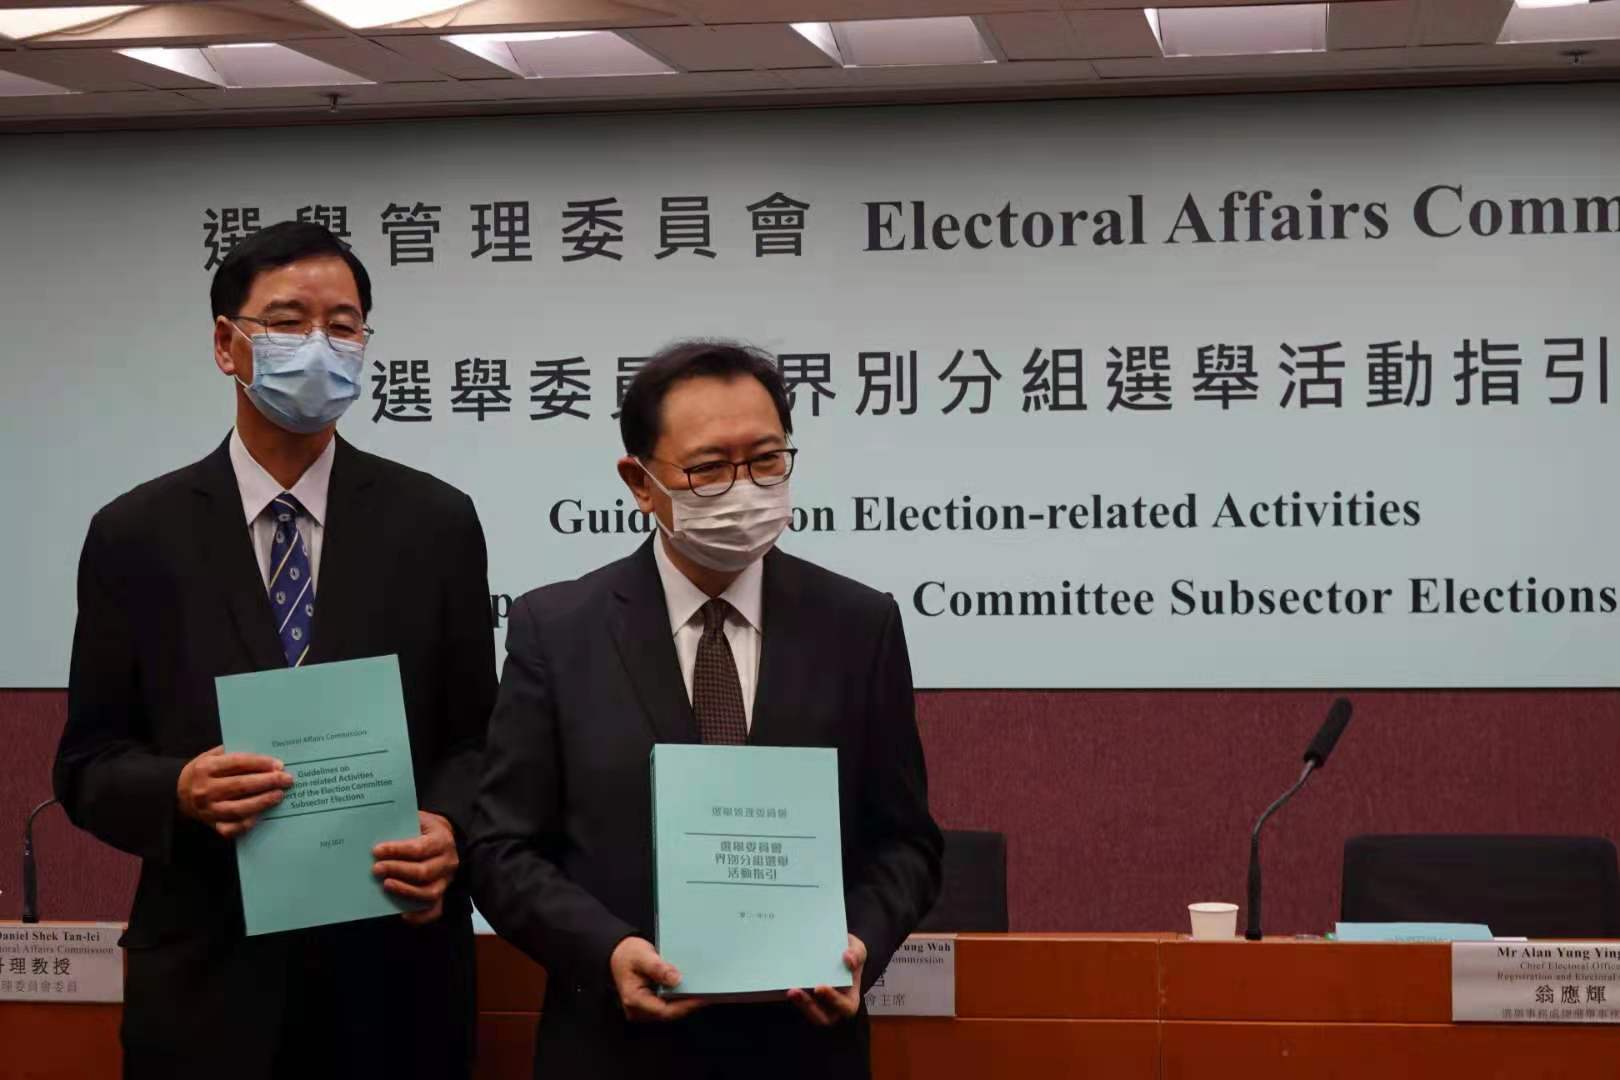 選舉會界別分組選舉活動指引發表 投票時間縮短至9小時